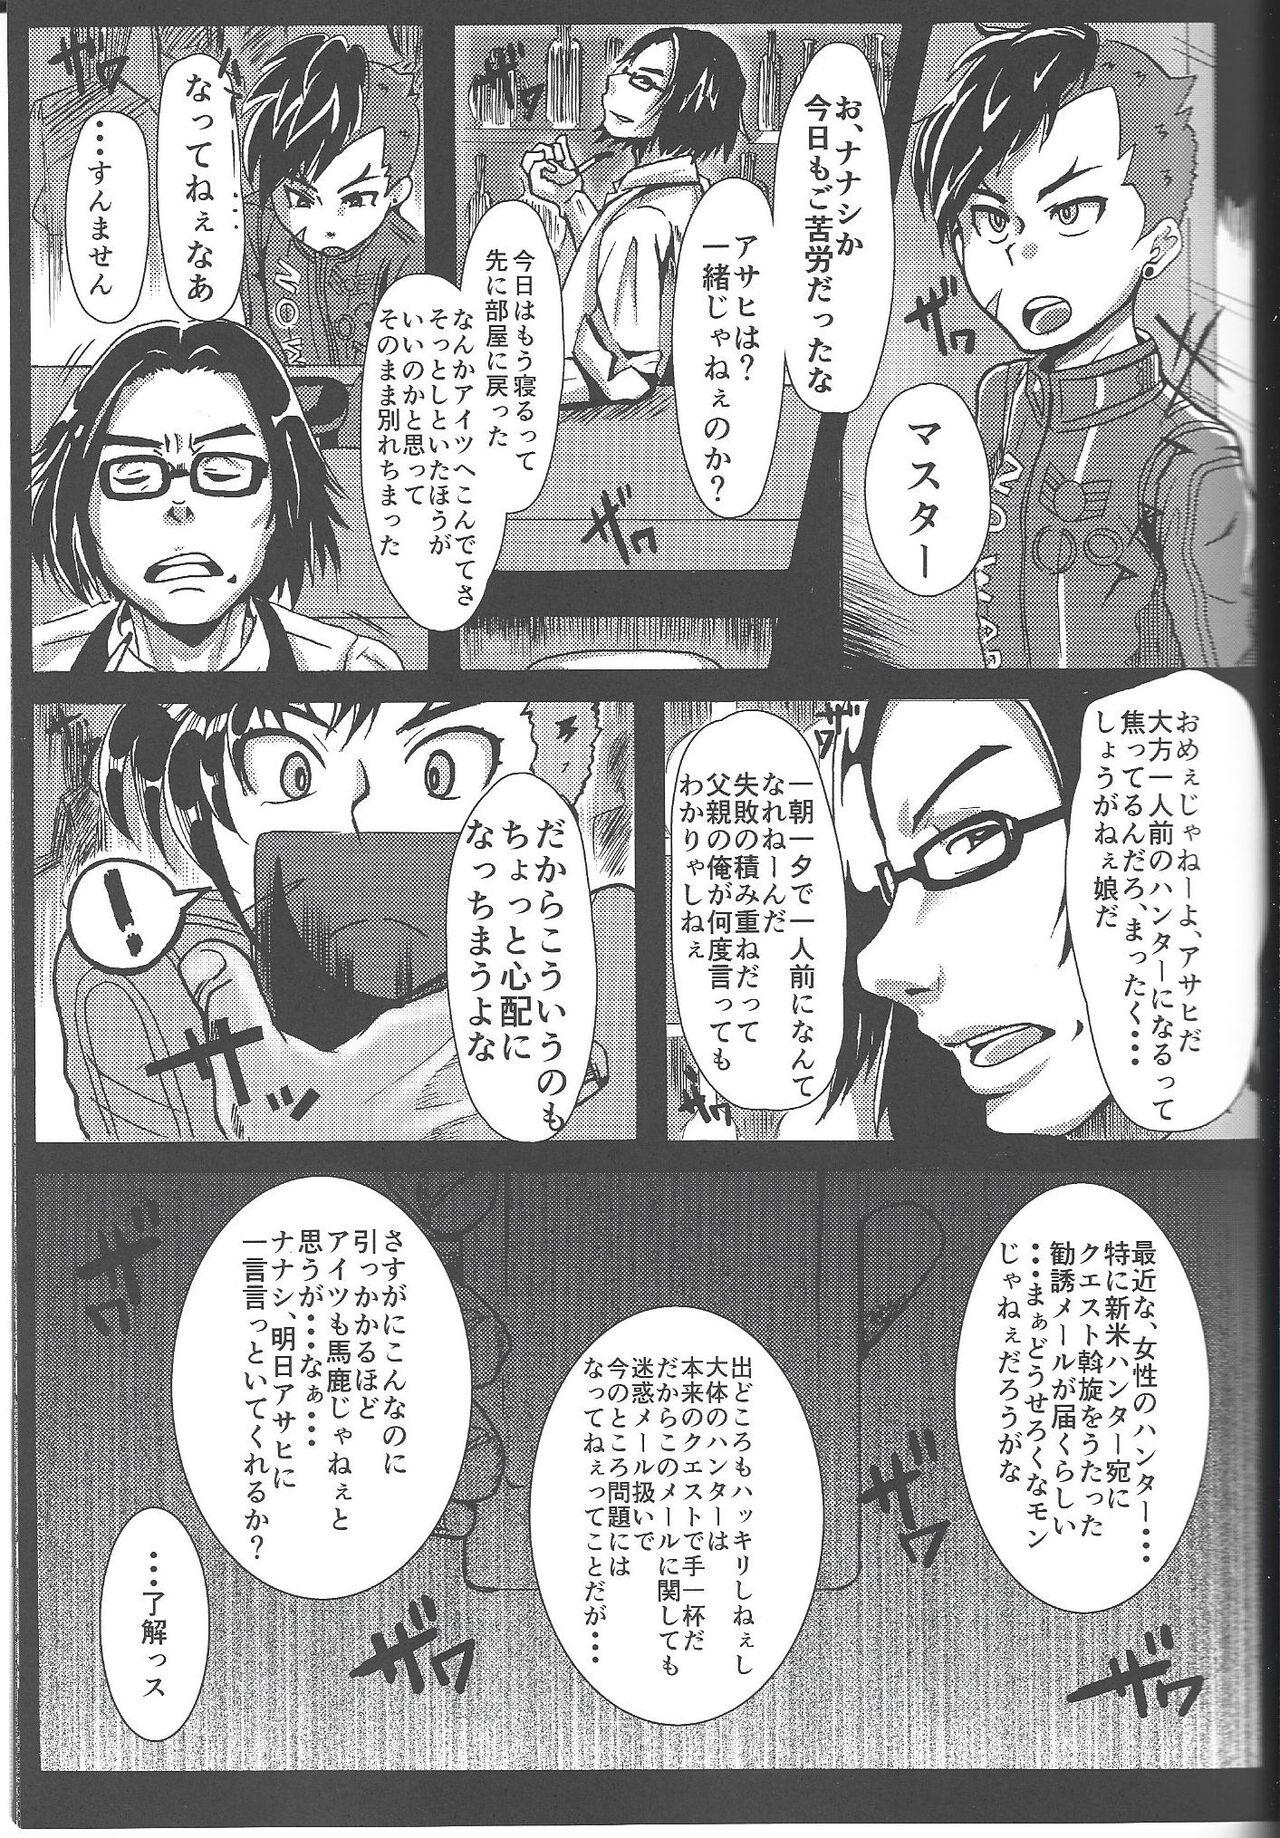 Twistys Ichininmae no Megami Zenpen - The Full Grown Goddess part 1 - Shin megami tensei Amigos - Page 6